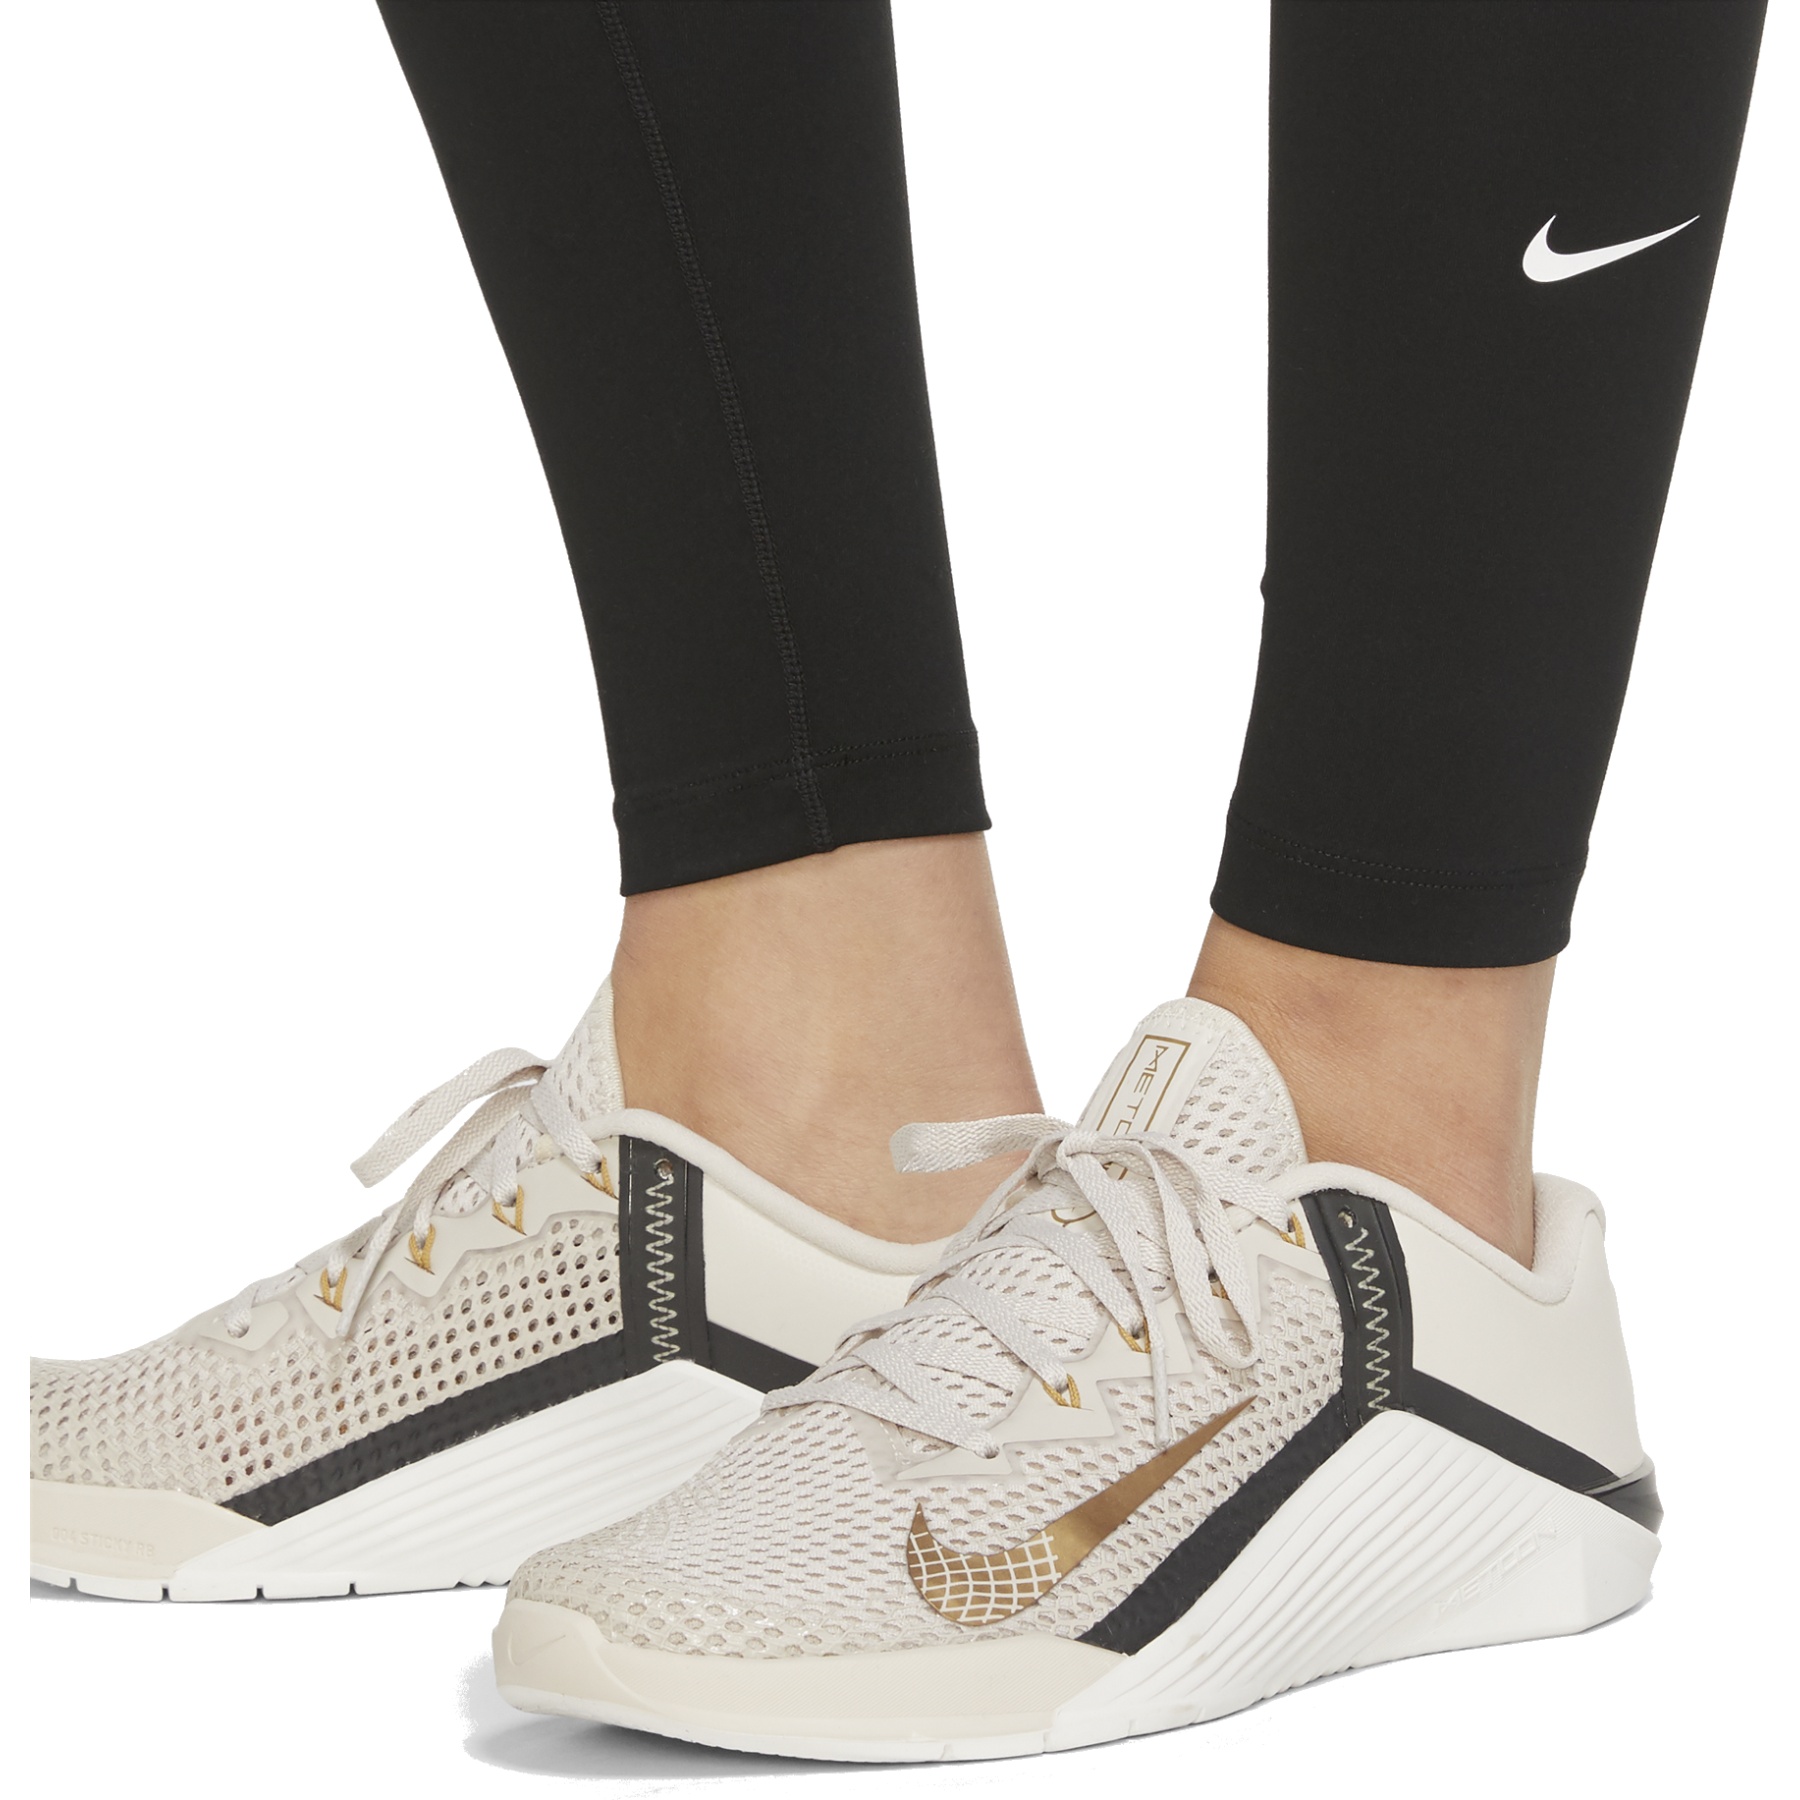 leggings de sport haut de gamme femme Nike One DM7278-010 taille  Royaume-Uni S-L